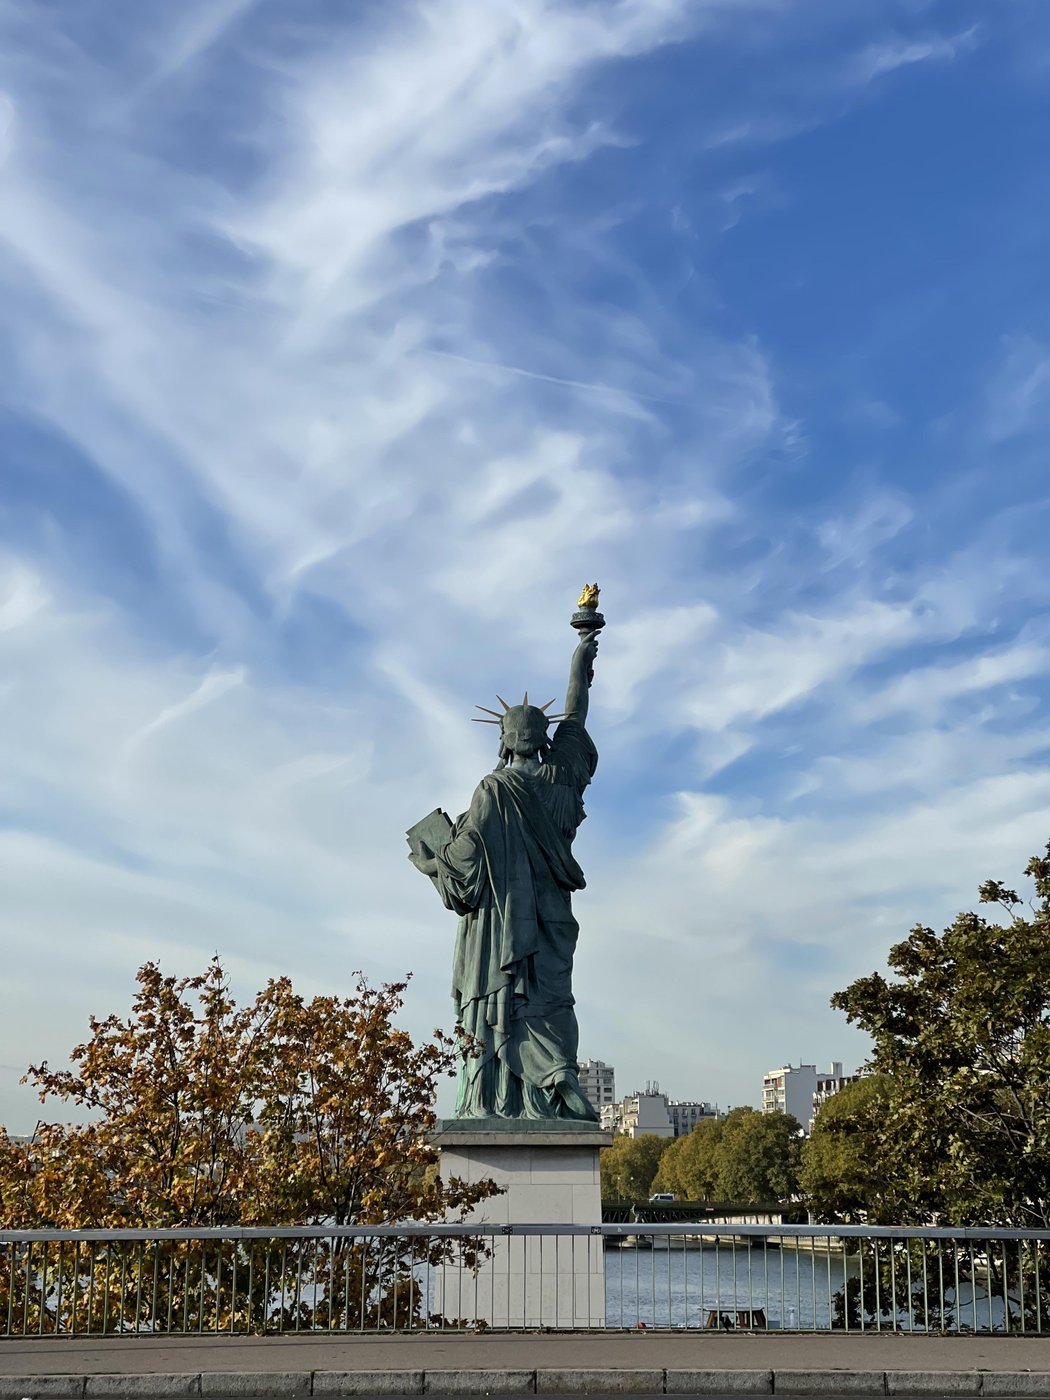 это тоже недалеко от дома, в Париже есть маленькая статуя свободы